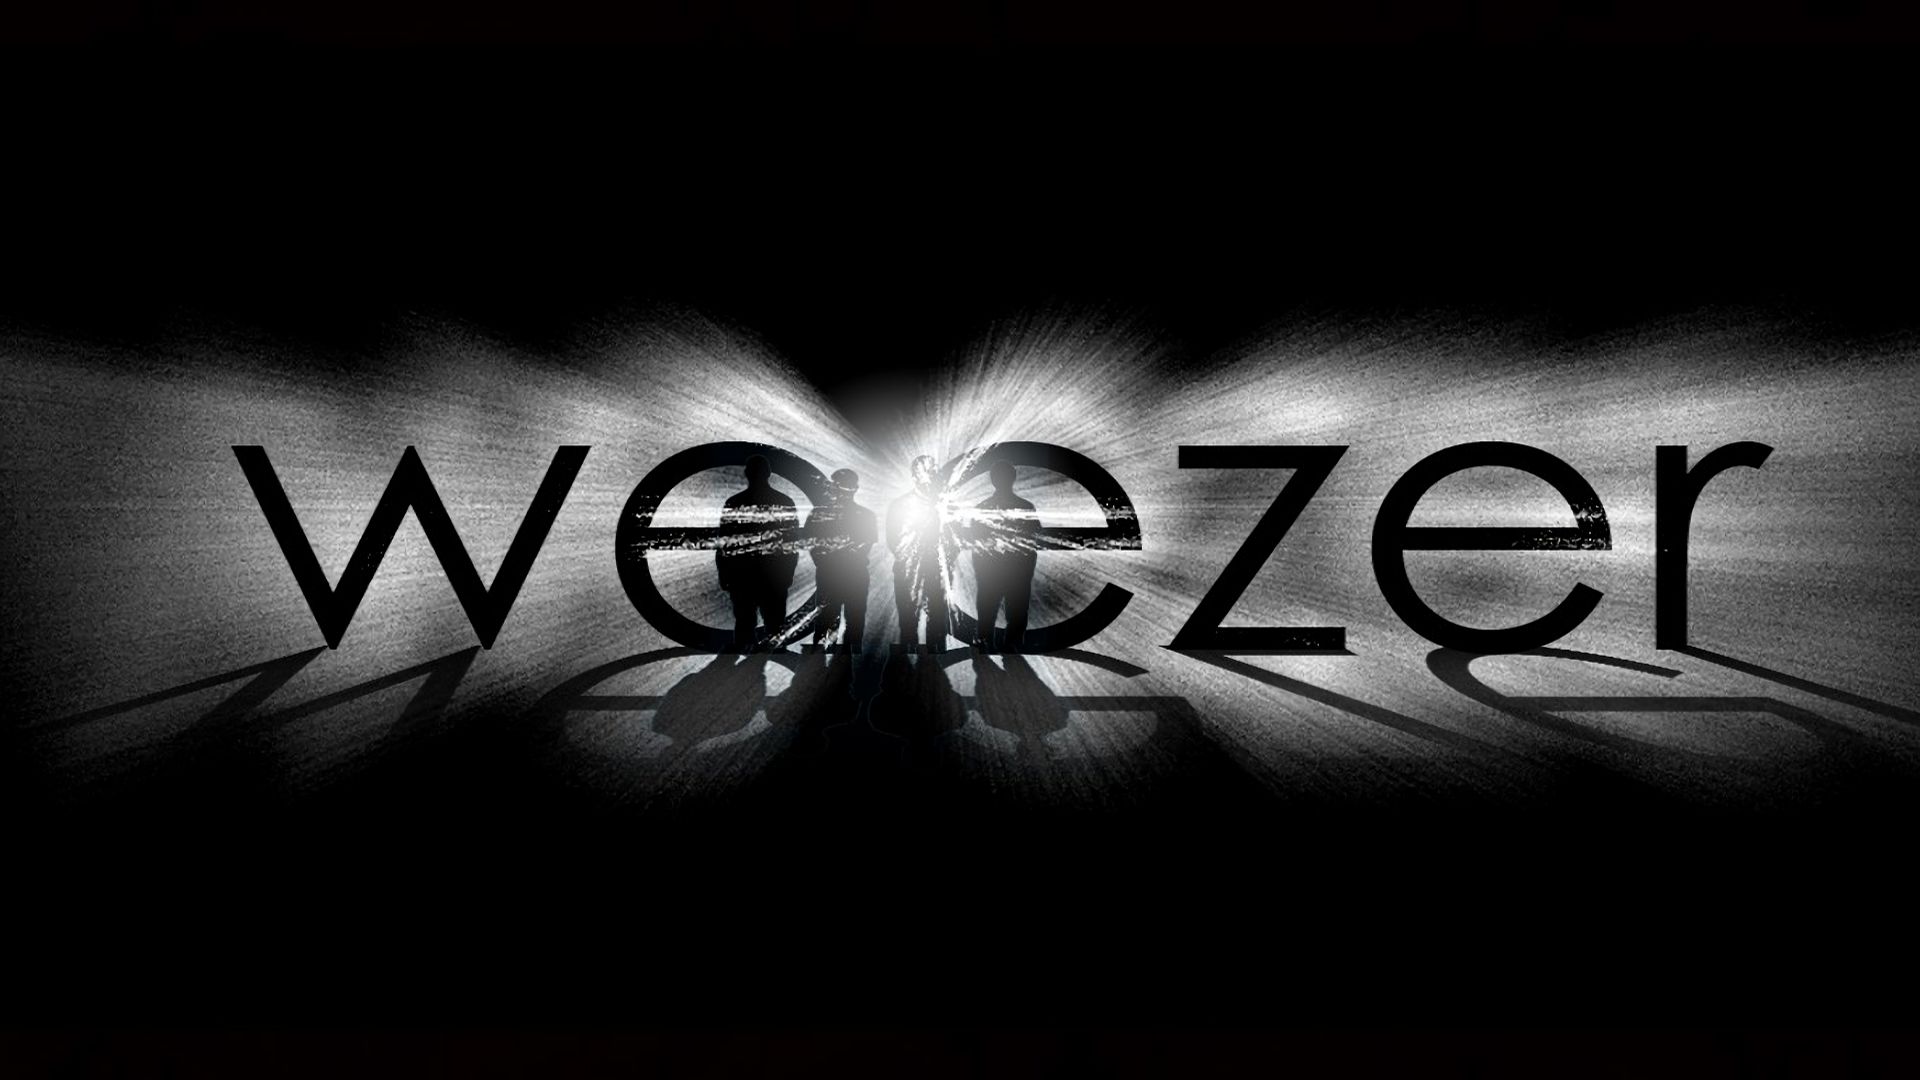 Los mejores fondos de pantalla de Weezer para la pantalla del teléfono